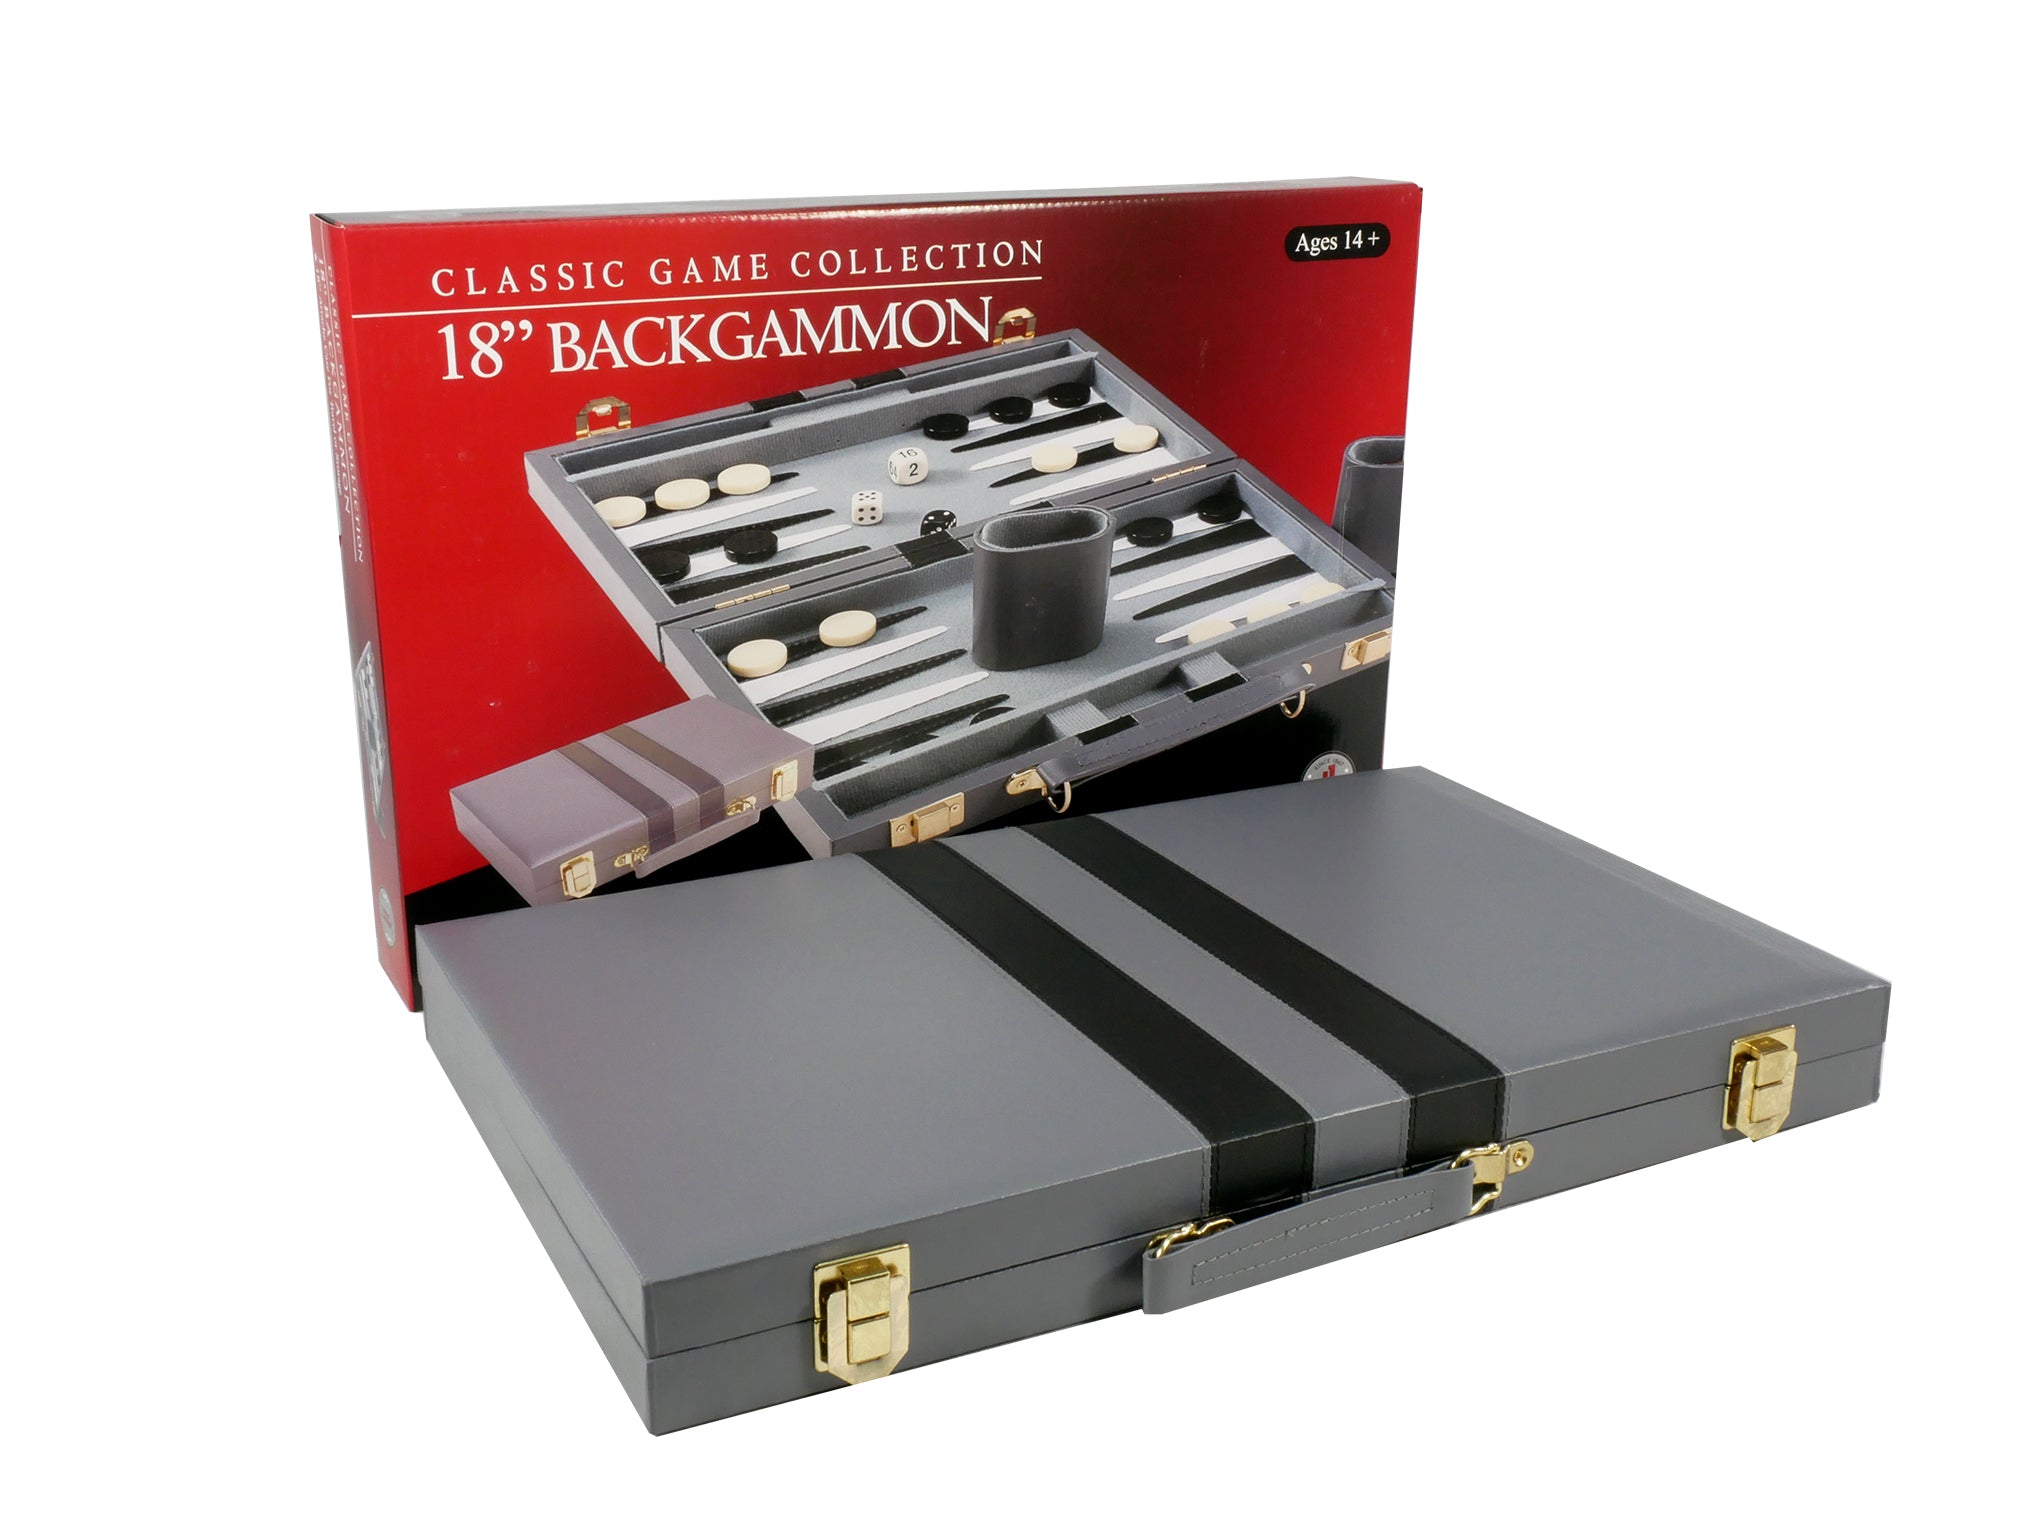 Backgammon- 18" Grey Vinyl Backgammon Set with Stripe